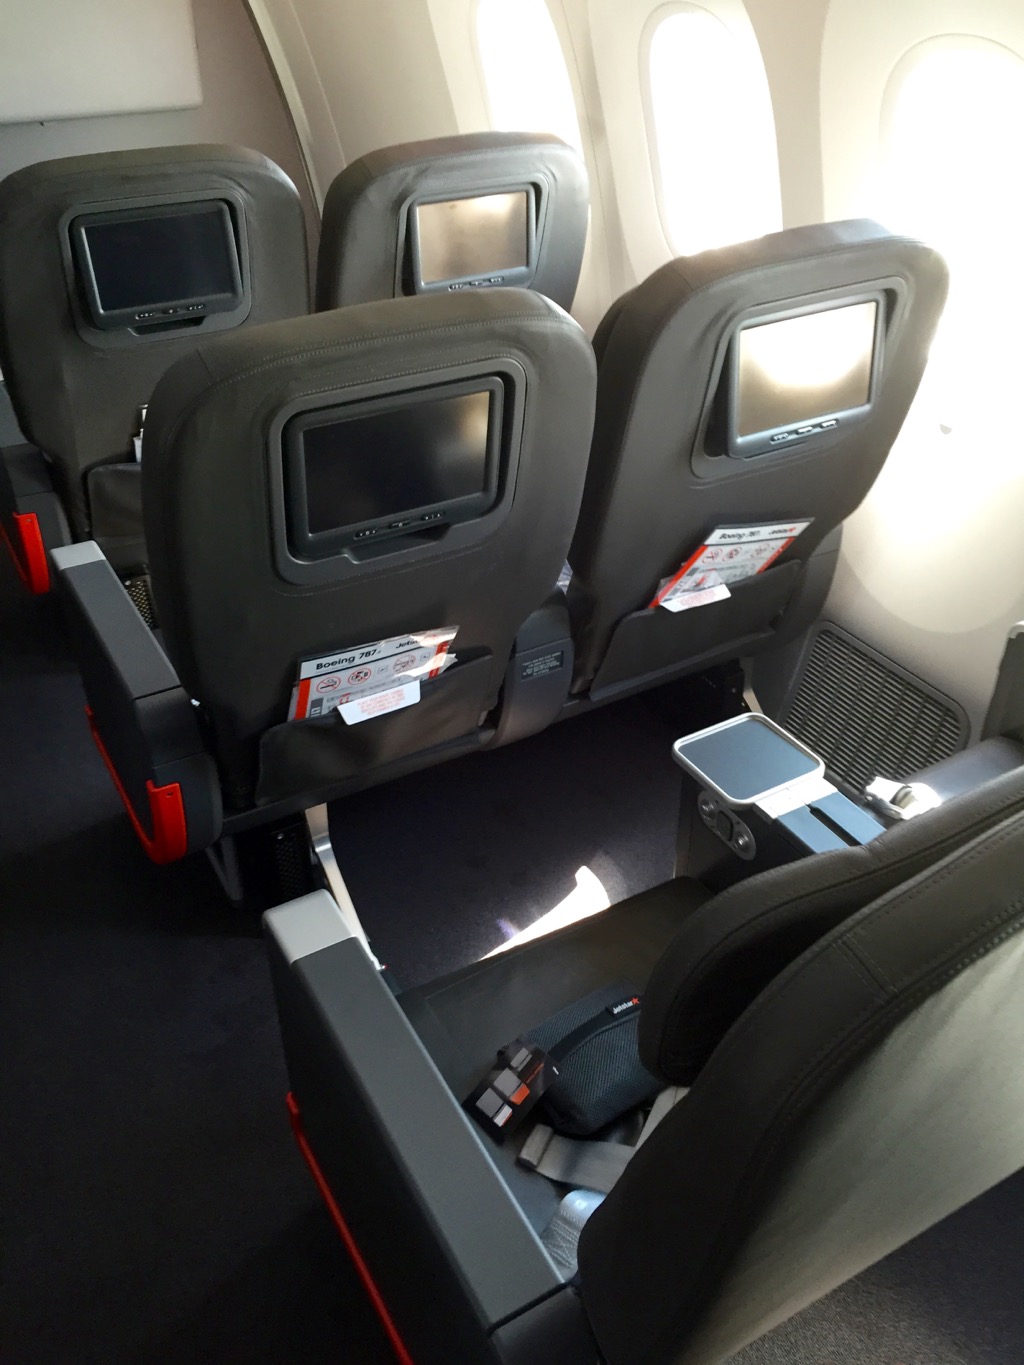 Jetstar 787 StarClass - Business Class | Point Hacks